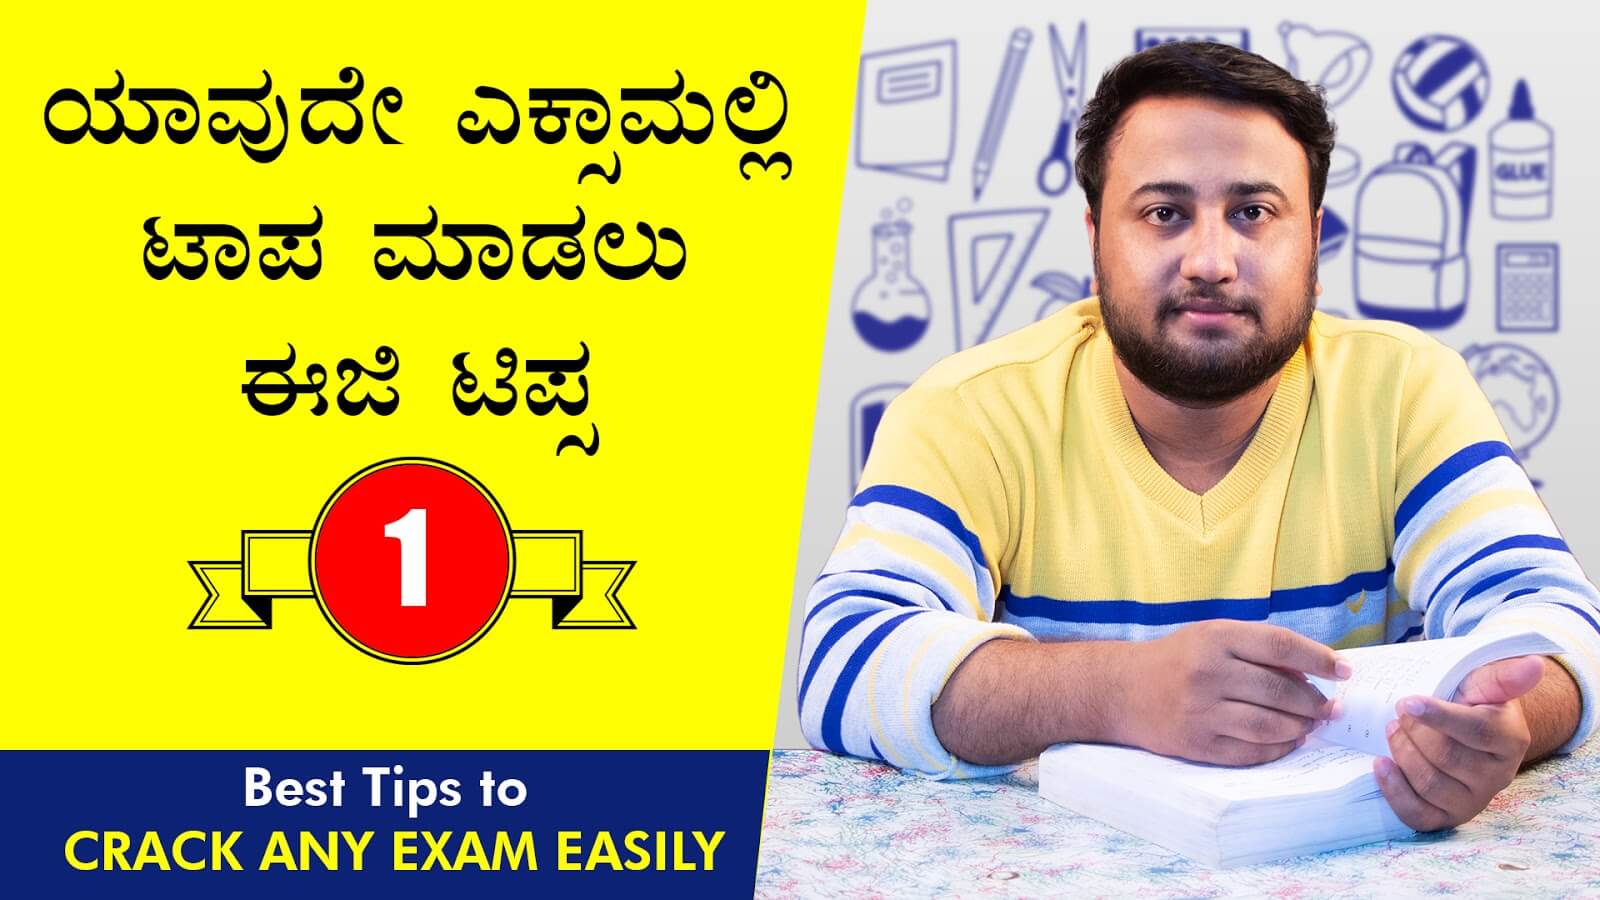 ಯಾವುದೇ ಎಕ್ಸಾಮಲ್ಲಿ‌ ಟಾಪ ಮಾಡಲು ಈಜಿ ಟಿಪ್ಸ : Best Tips to Crack Any Exam Easily  in Kannada - Exam Study Tips in Kannada - Roaring Creations Films